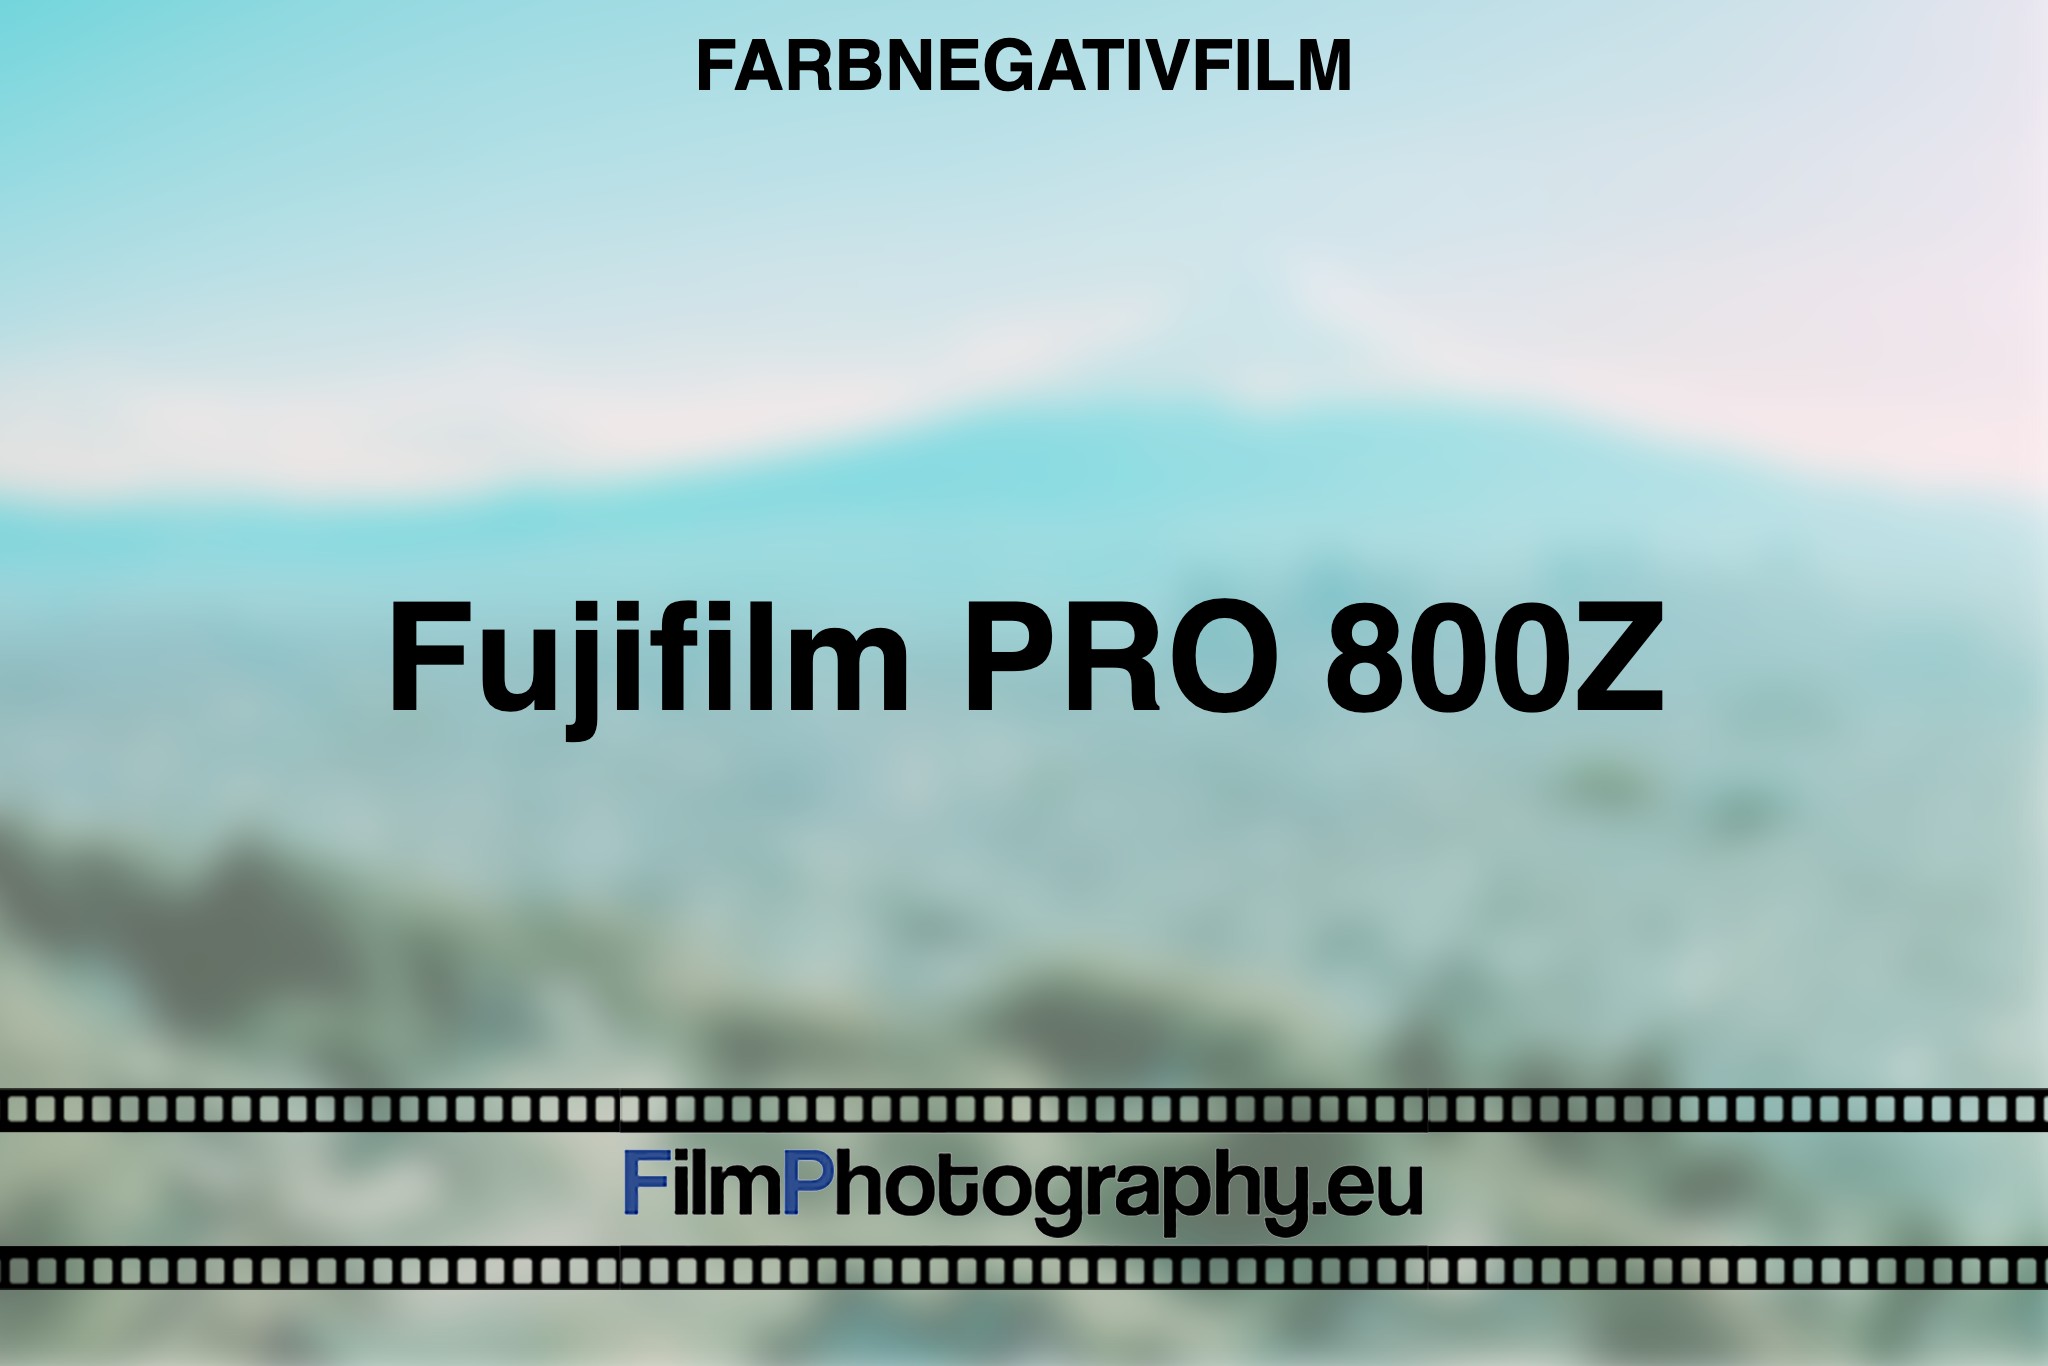 fujifilm-pro-800z-farbnegativfilm-bnv